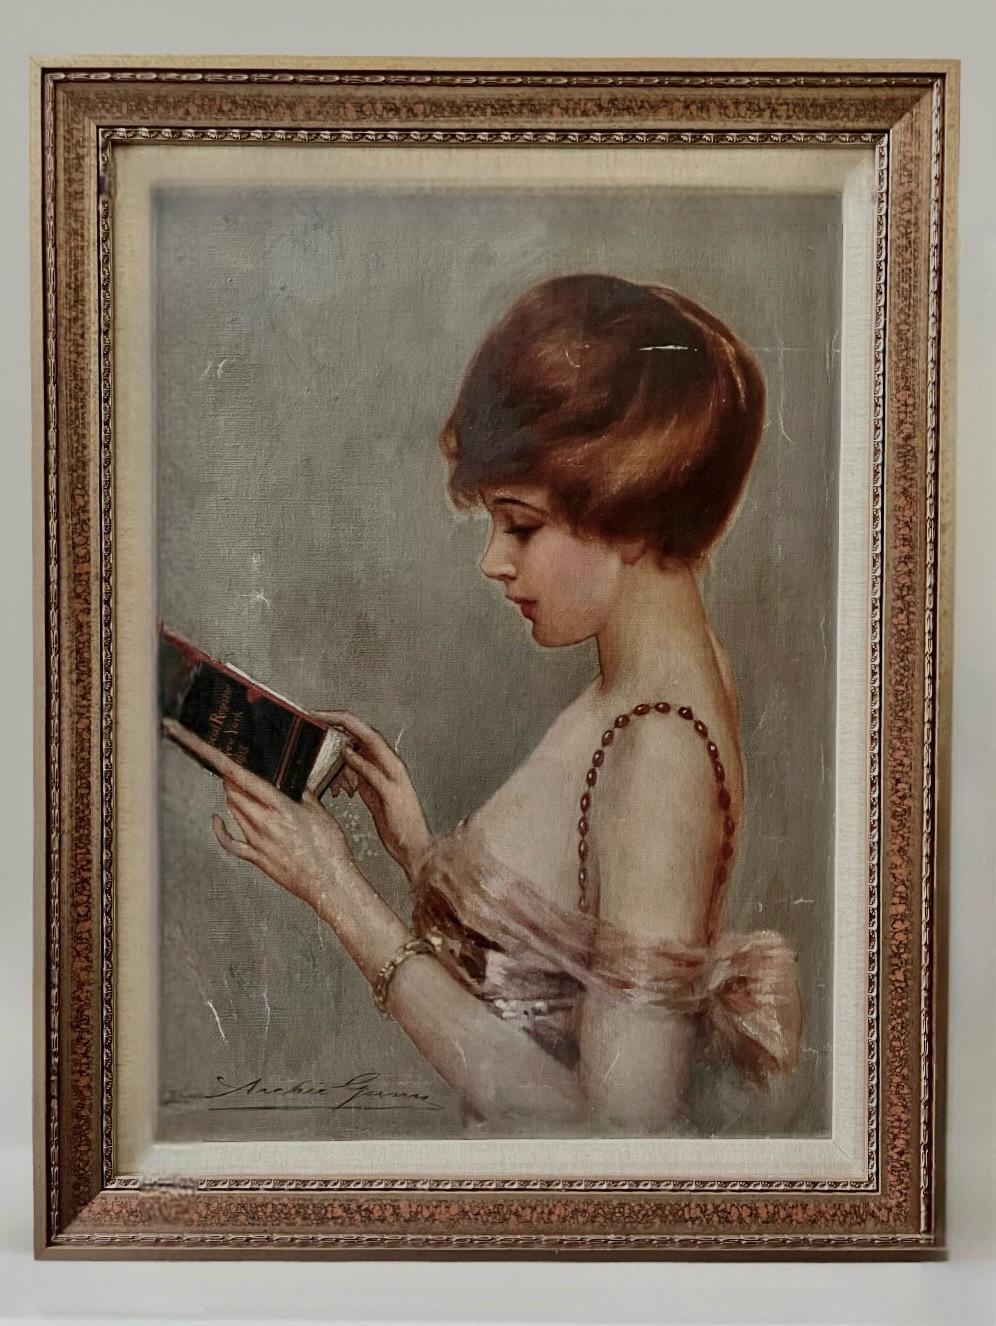 Archie Gunn, Porträt einer New Yorker Debütantin, ohne Titel, Öl auf Leinwand, um 1920.

Eine bezaubernde junge Dame mit kastanienbraunem Haar in Profilansicht, die das Social Register of New York book, 1918, liest. In einem verzierten Holzrahmen